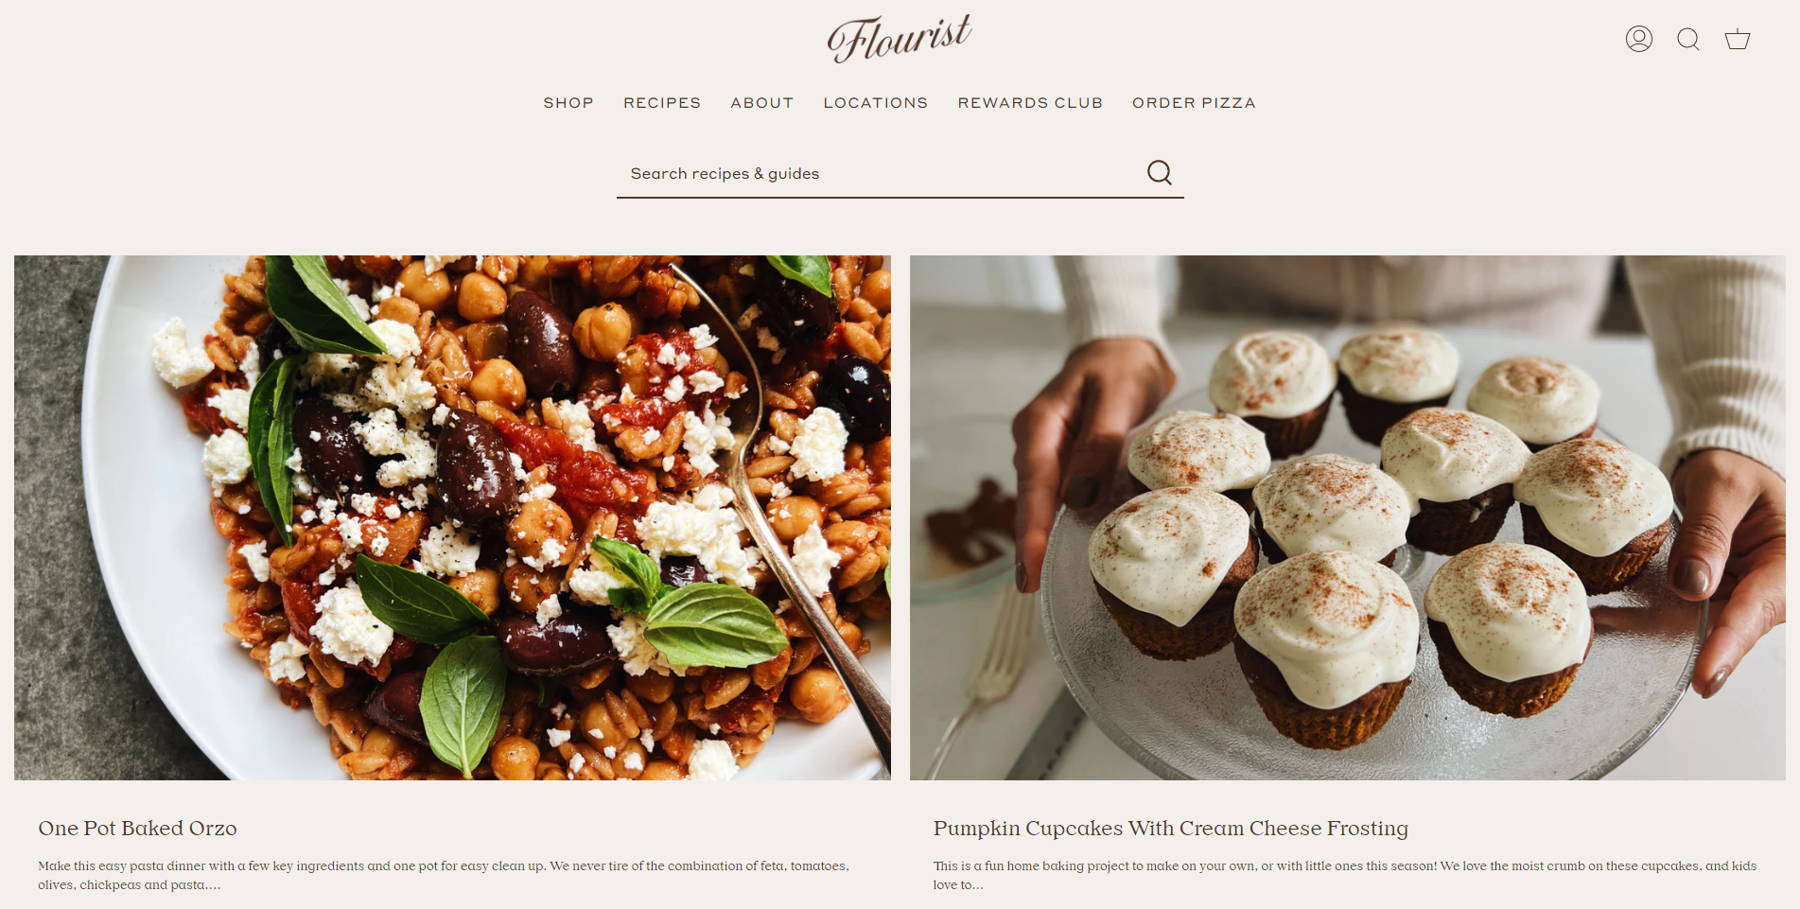 Скриншот рецептов от Flourist из коллекции примеров блога.